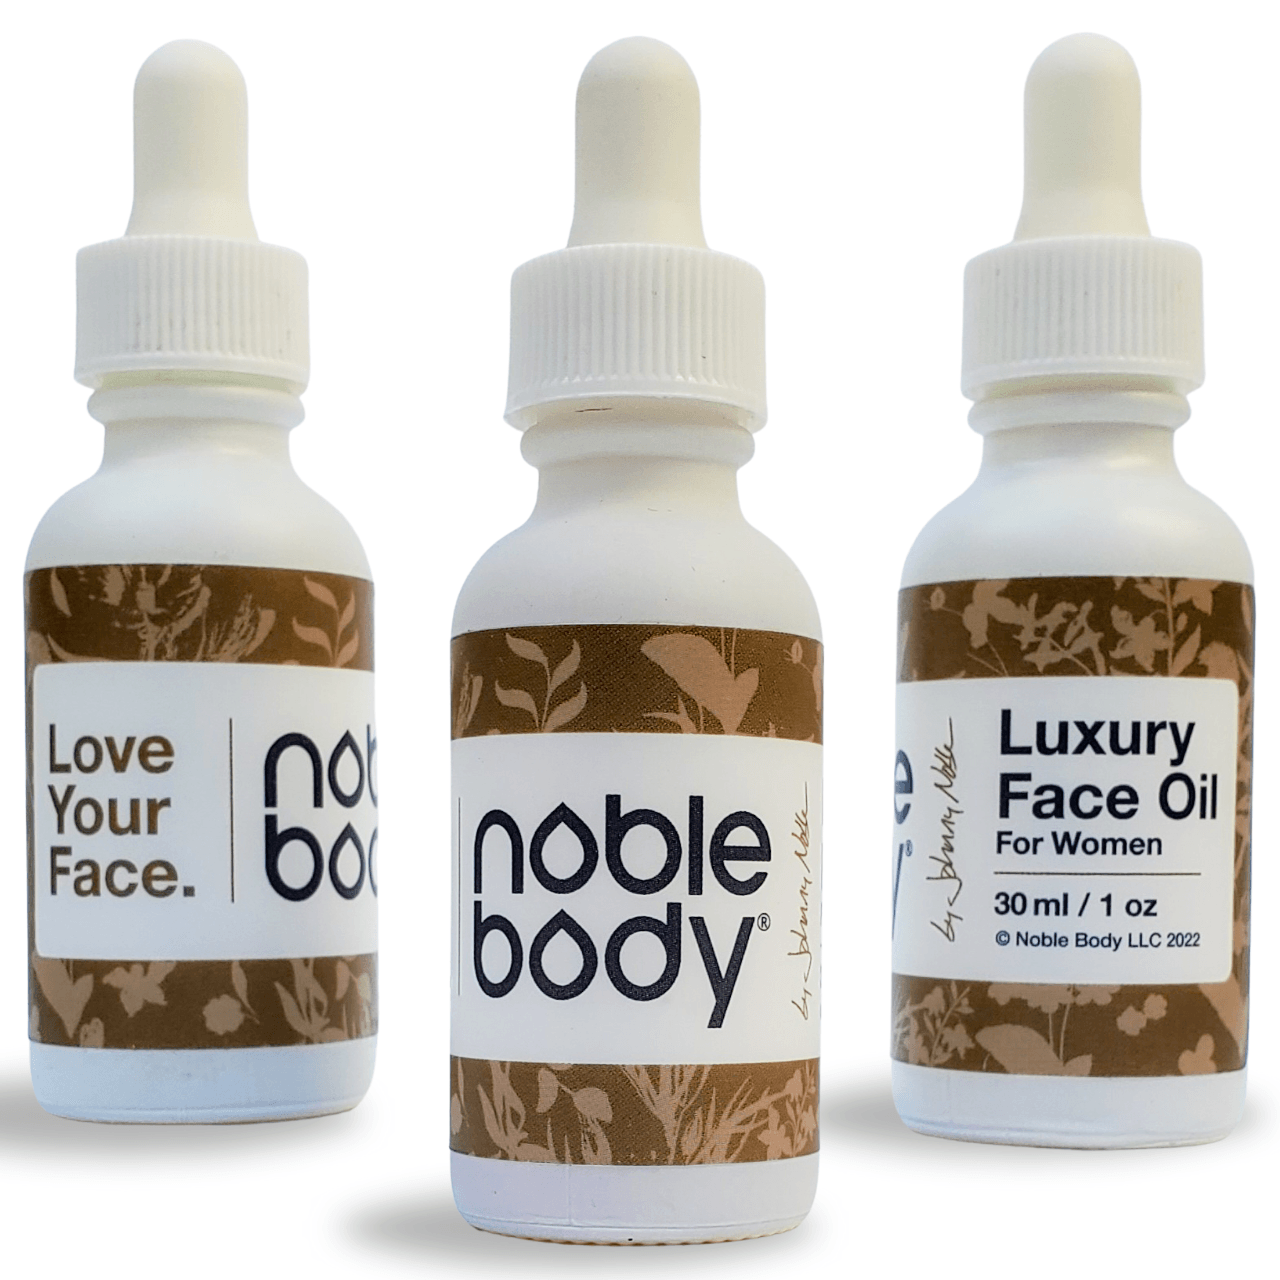 Luxury Face Oil for Women - Noble Body